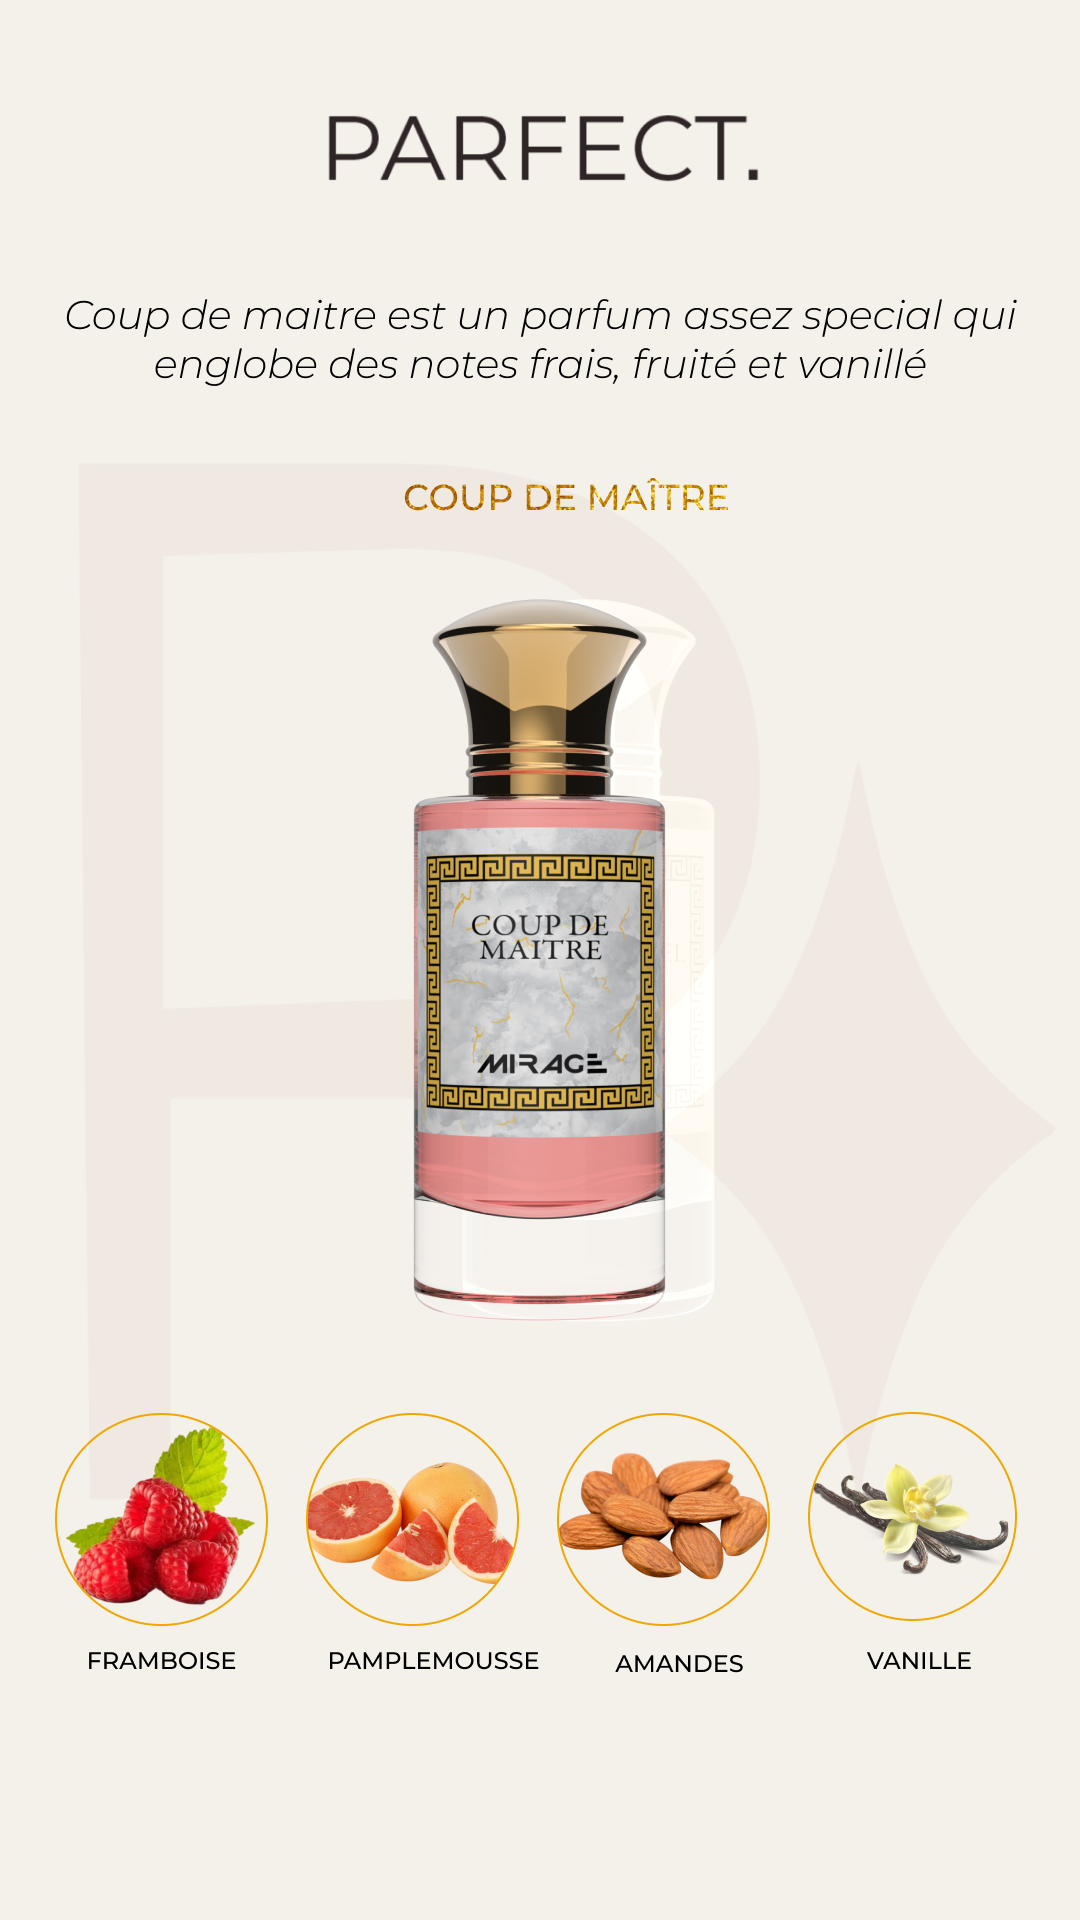 Parfect - Parfumerie Mirage - Parfums orientaux - Parfum coup de maitre - parfum frais fruité et vanillé